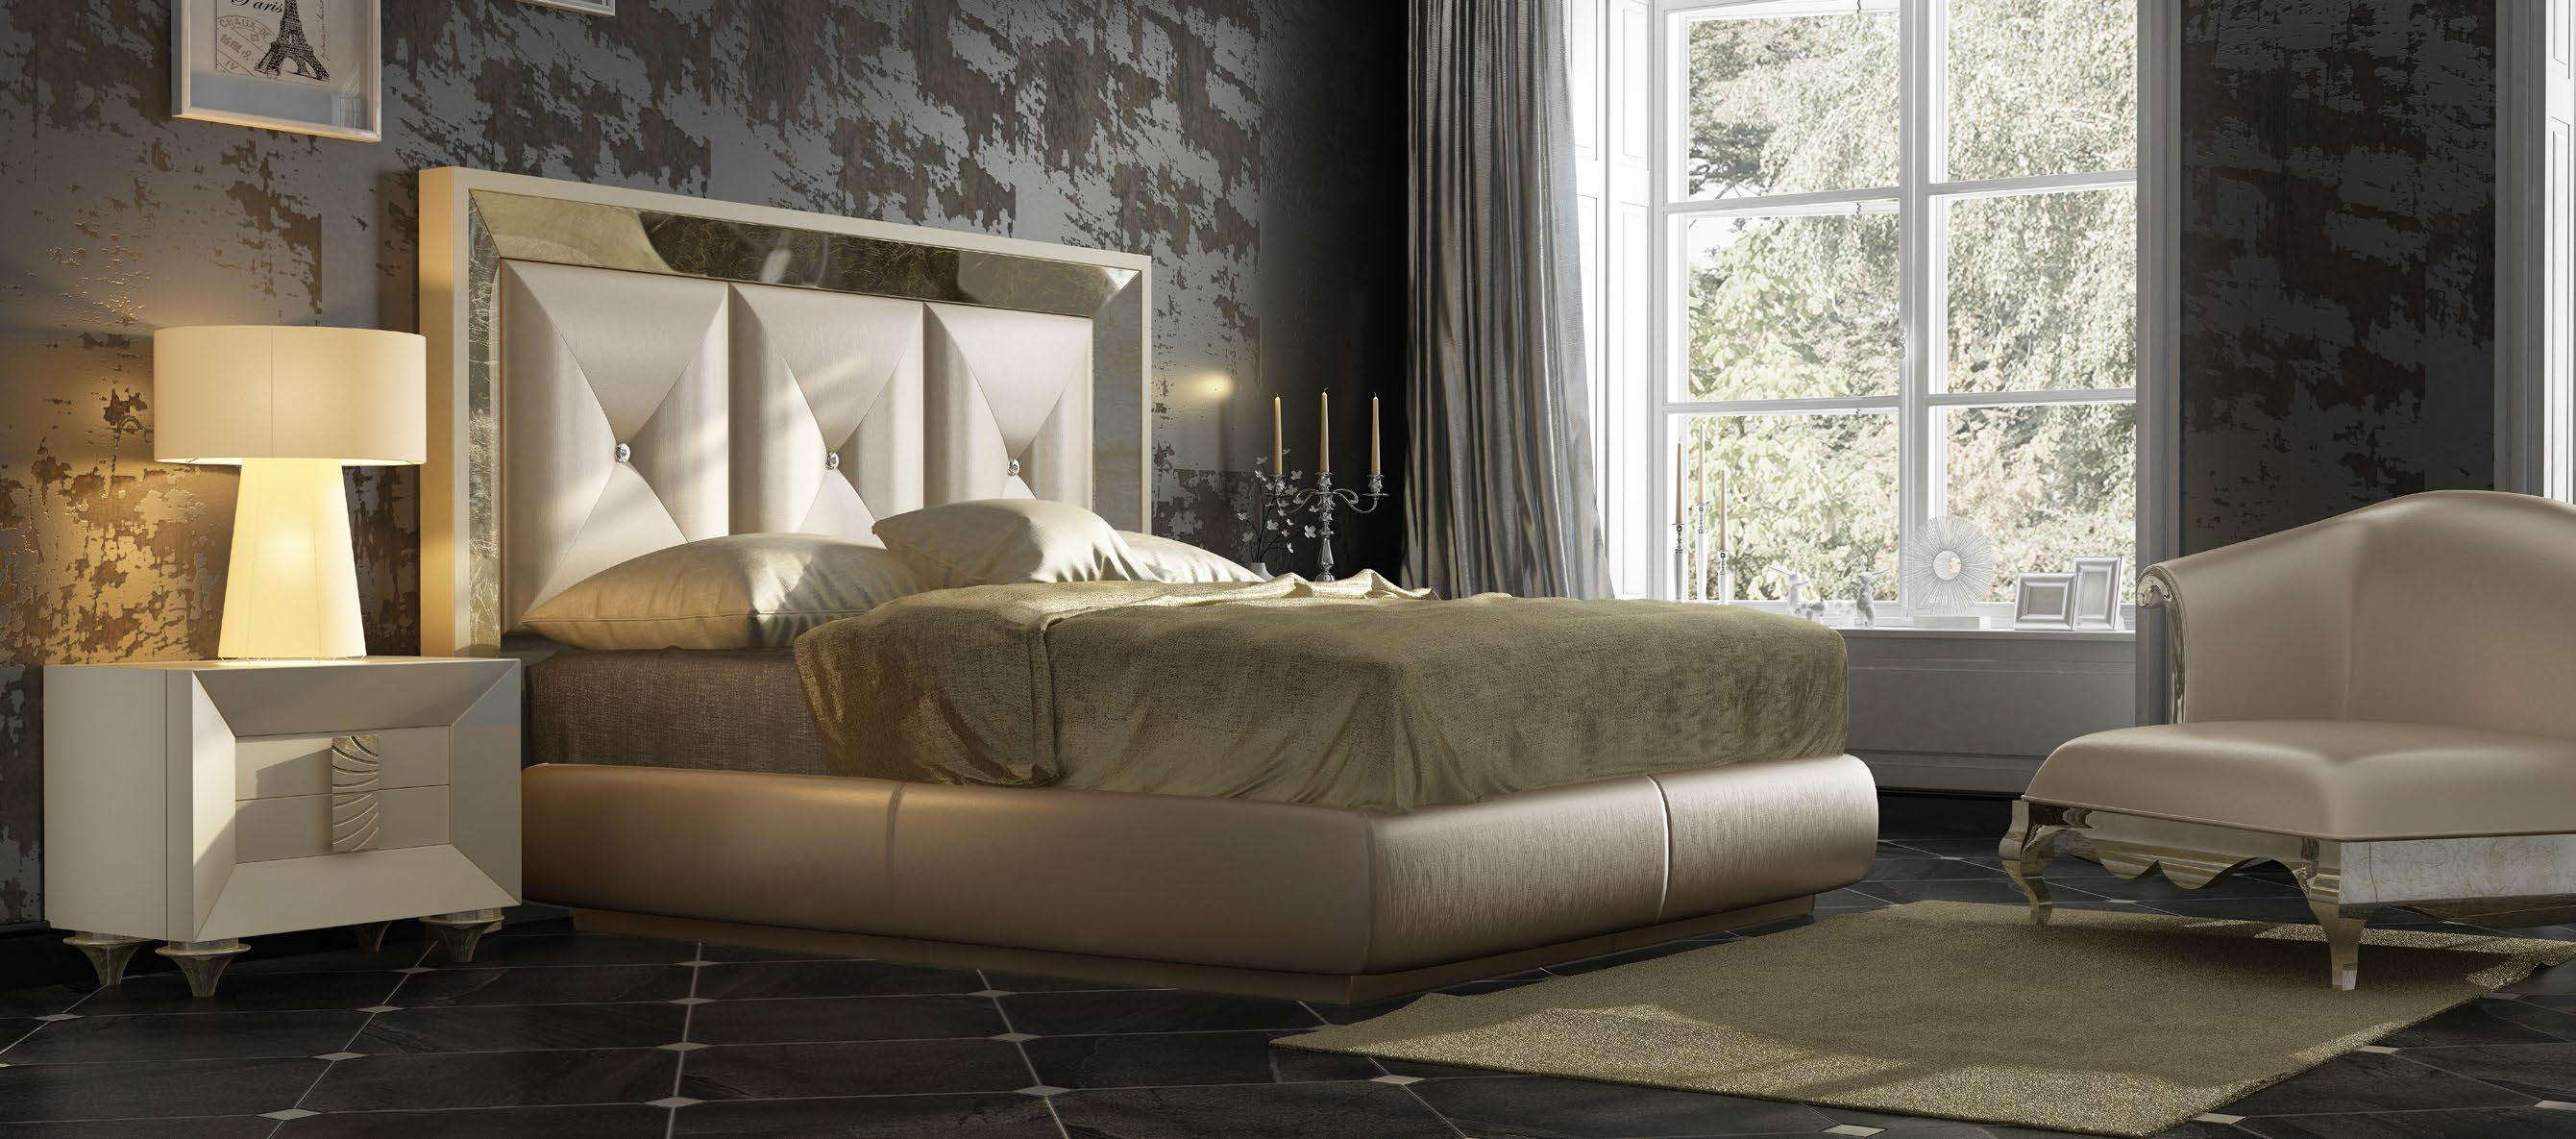 Brands Franco Furniture Avanty Bedrooms, Spain DOR 109